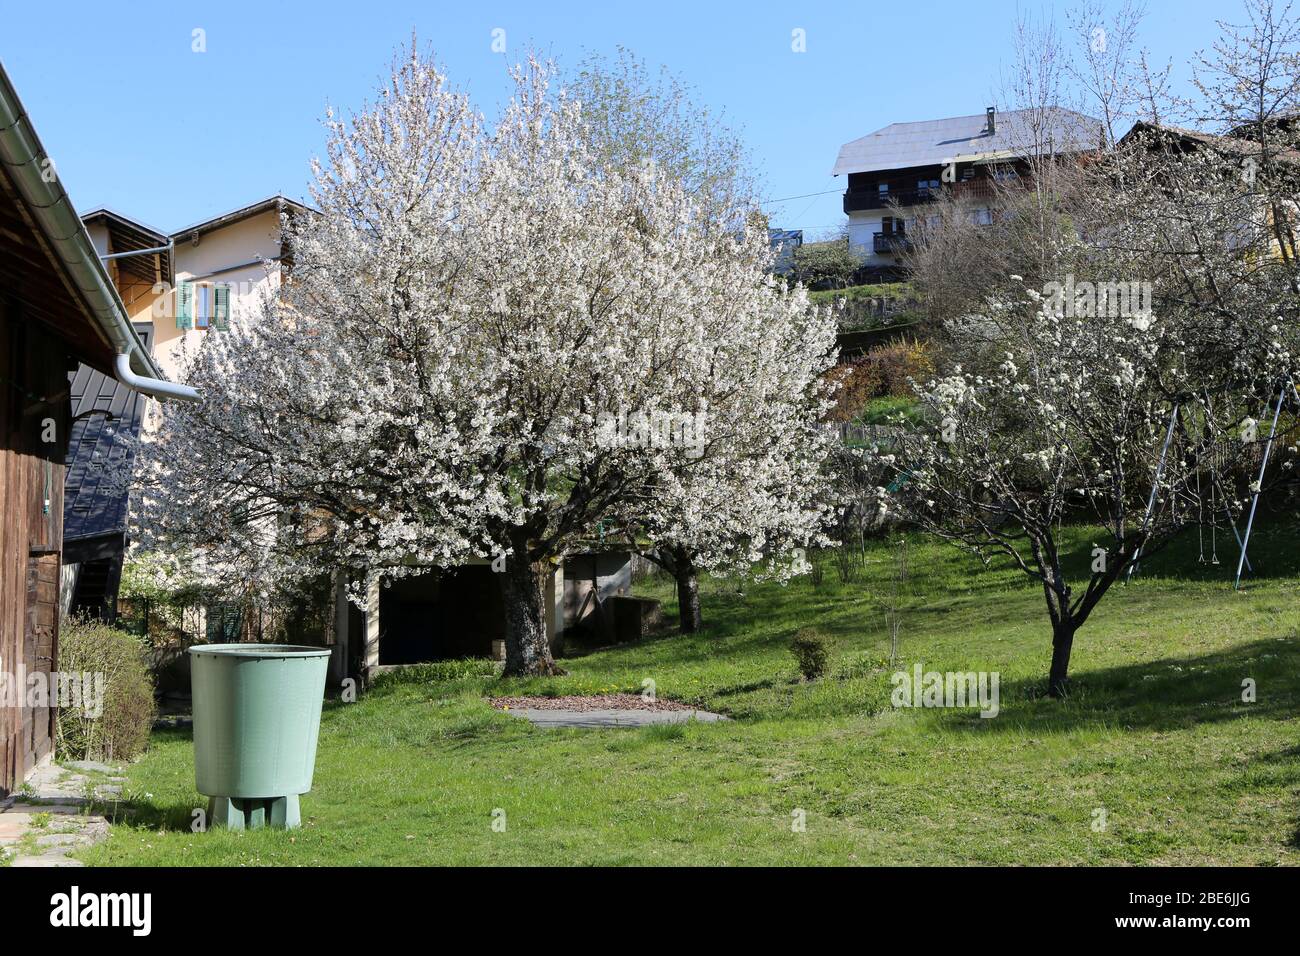 Arbres en fleurs sur un terreno. Alpi françaises. Saint-Gervais-les-Bains. Alta Savoia. Francia. Foto Stock